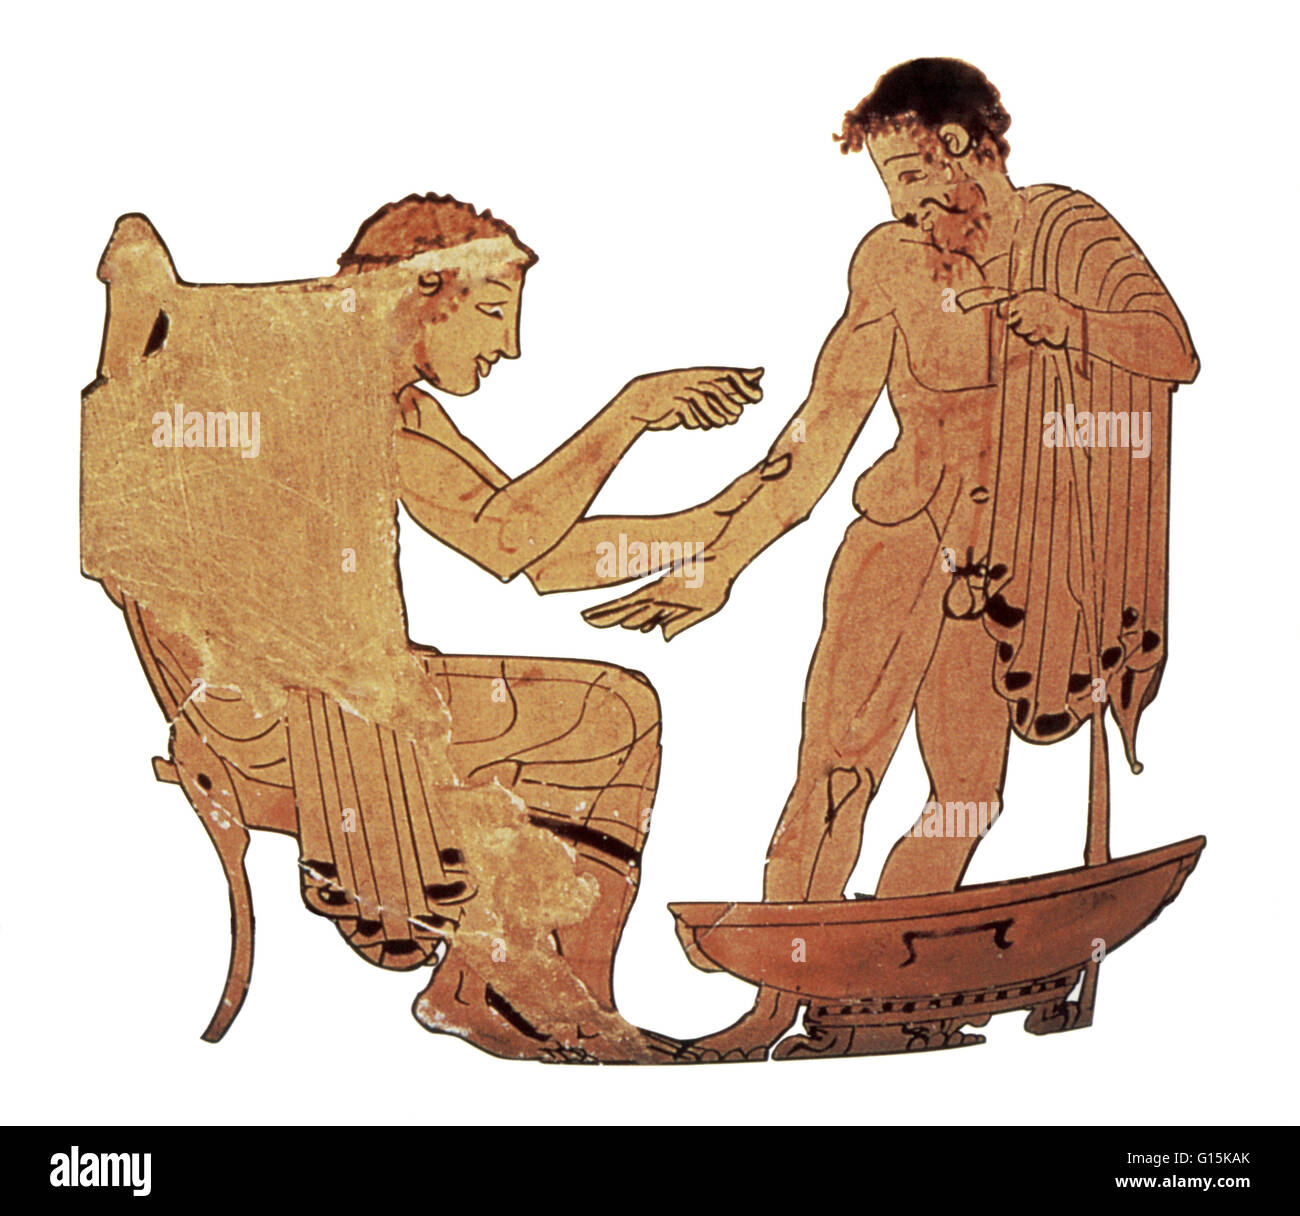 Eine antike griechische Arzt, mit einem Skalpell, lassen Blut eines Patienten. Aderlass war oft als Heilmittel für körperliche Ungleichgewichte eingesetzt. Stockfoto